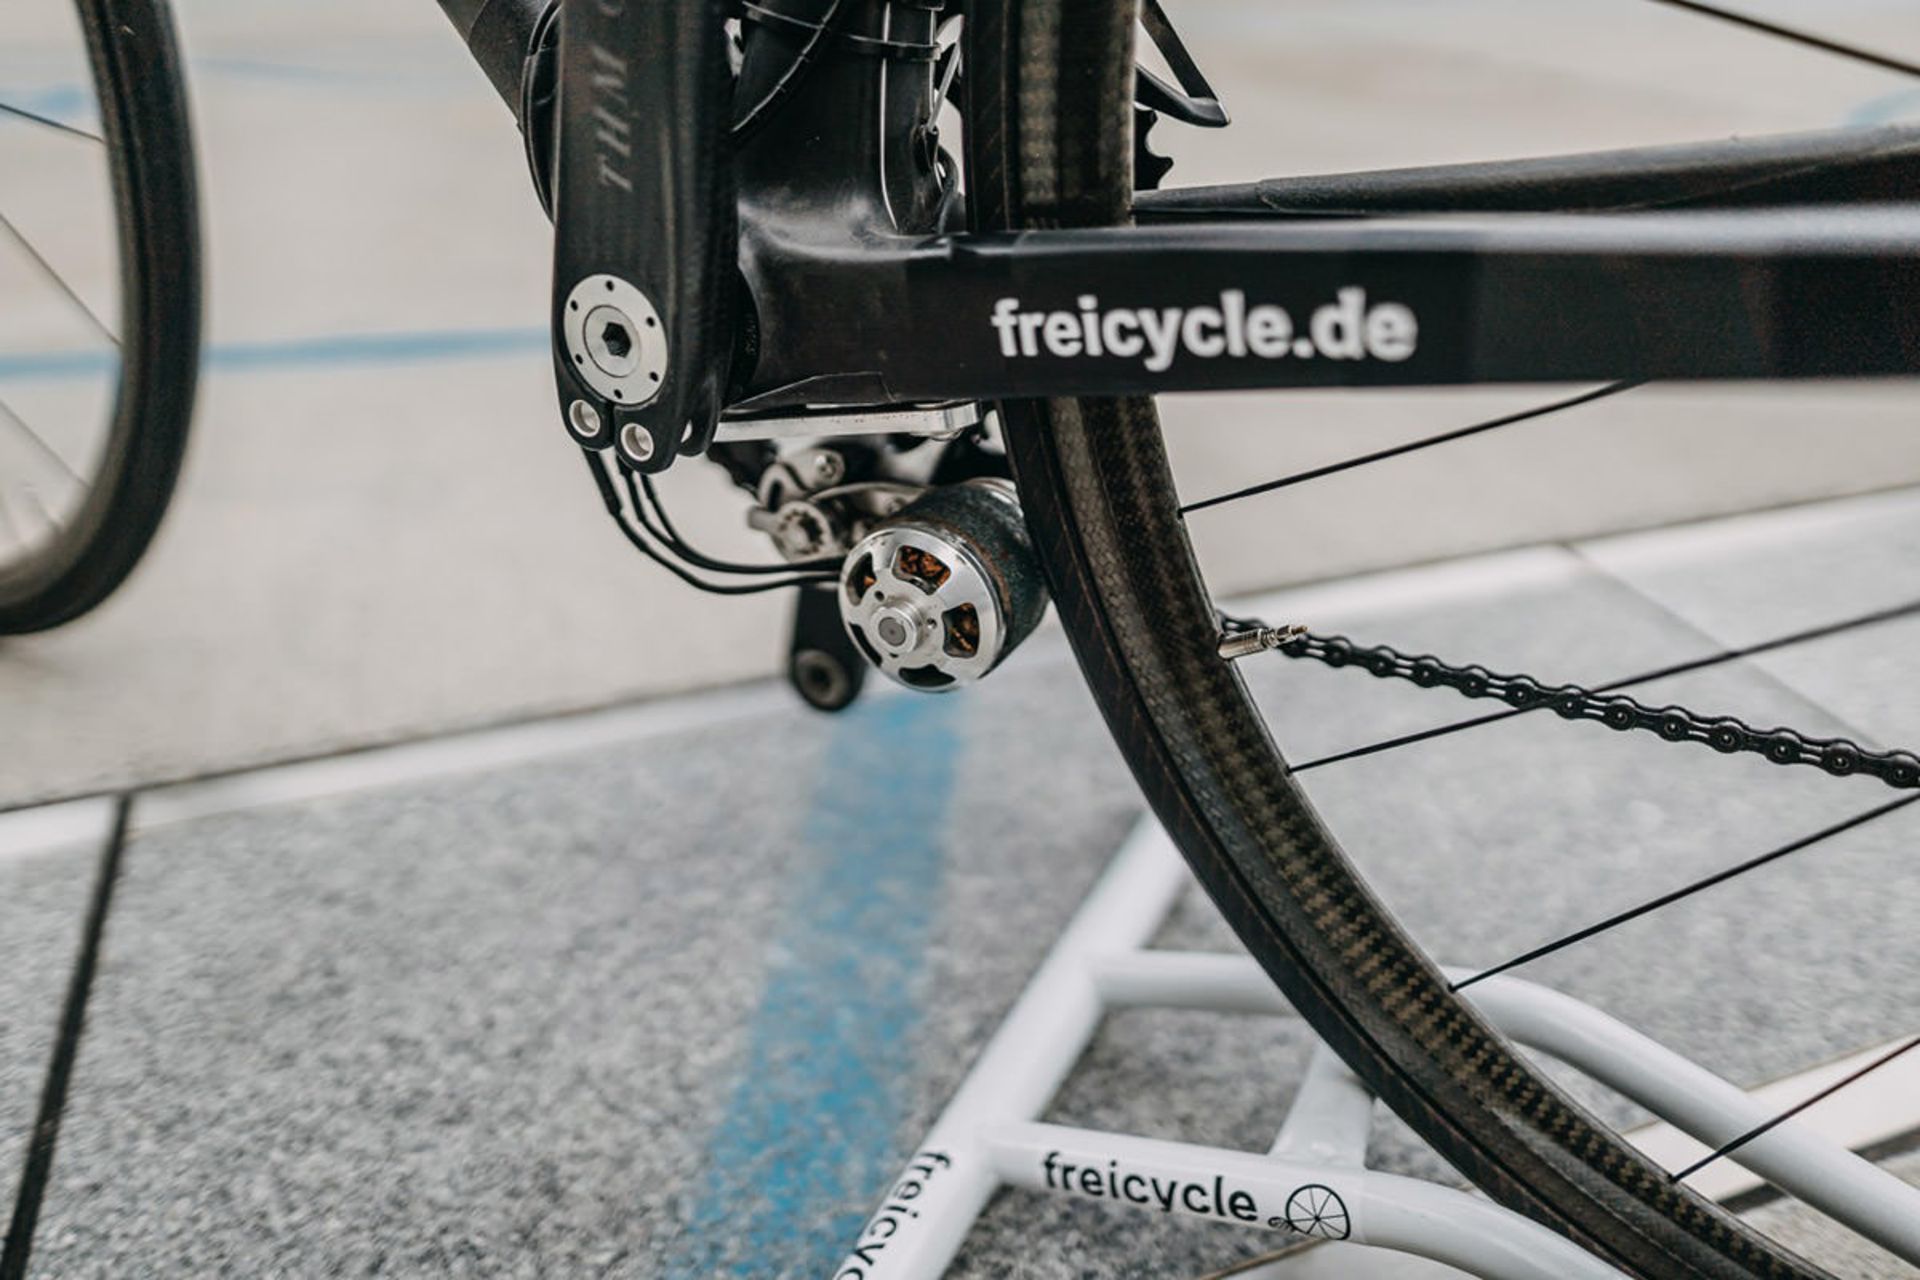 دوچرخه برقی / ebike سبک وزن فری سایکل مجهز به موتور الکتریکی محرک اصطکاکی